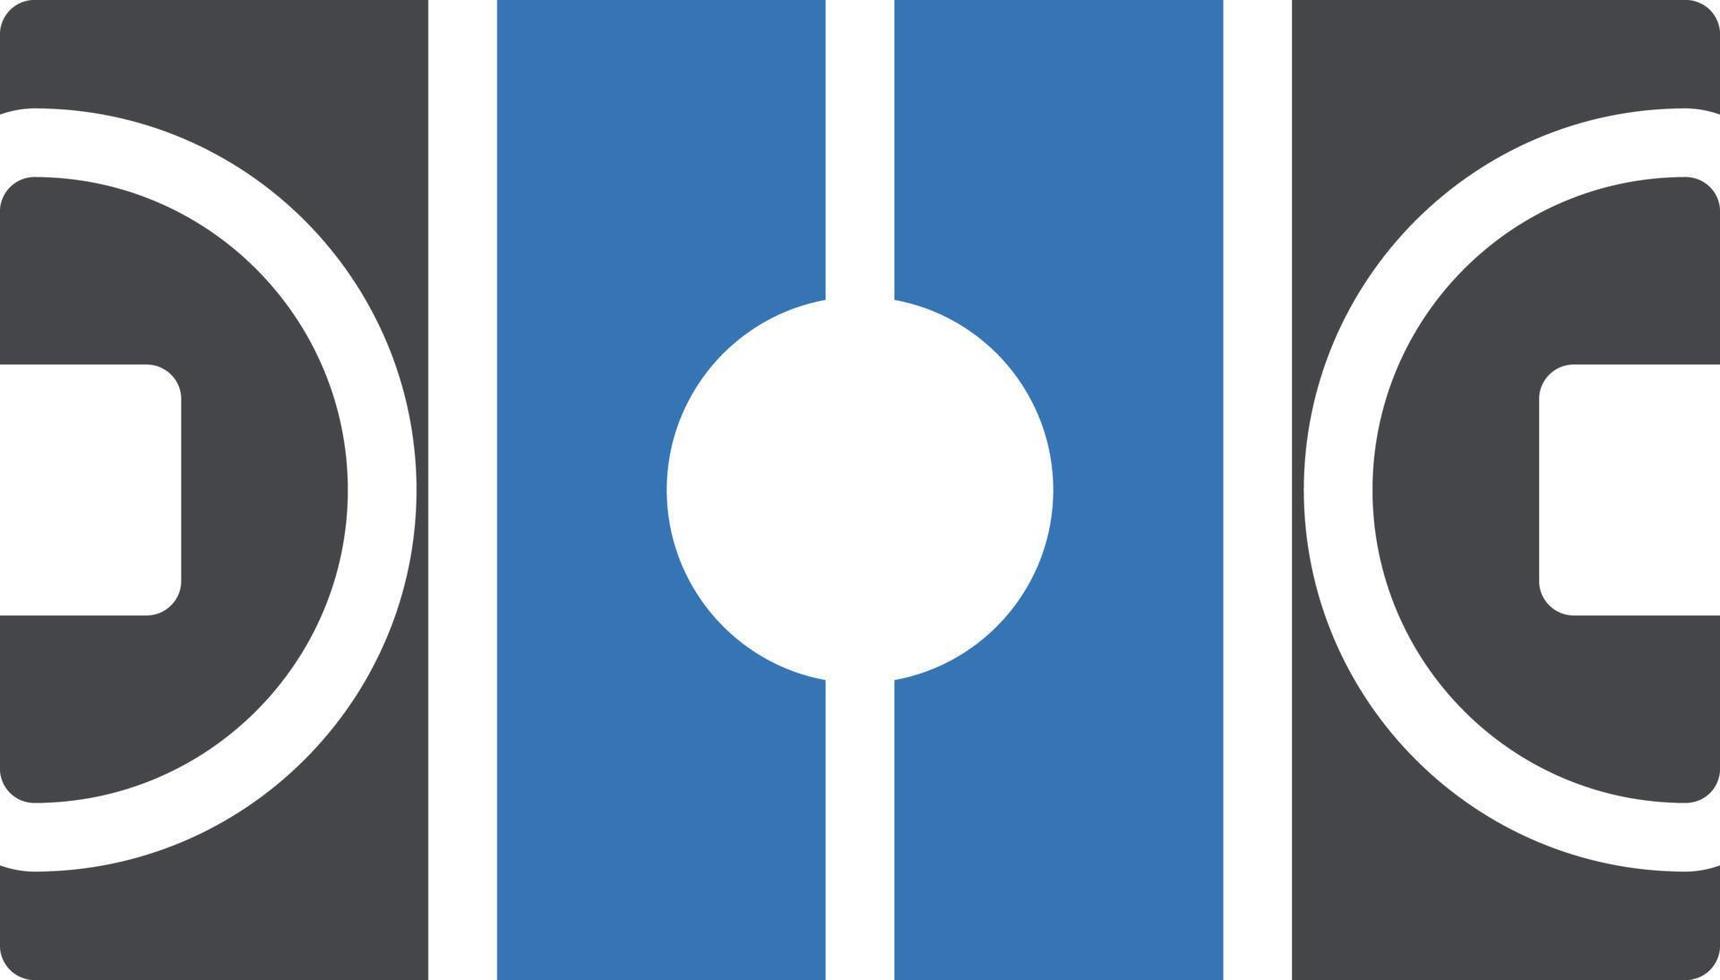 illustrazione vettoriale del campo da hockey su uno sfondo. simboli di qualità premium. icone vettoriali per il concetto e la progettazione grafica.